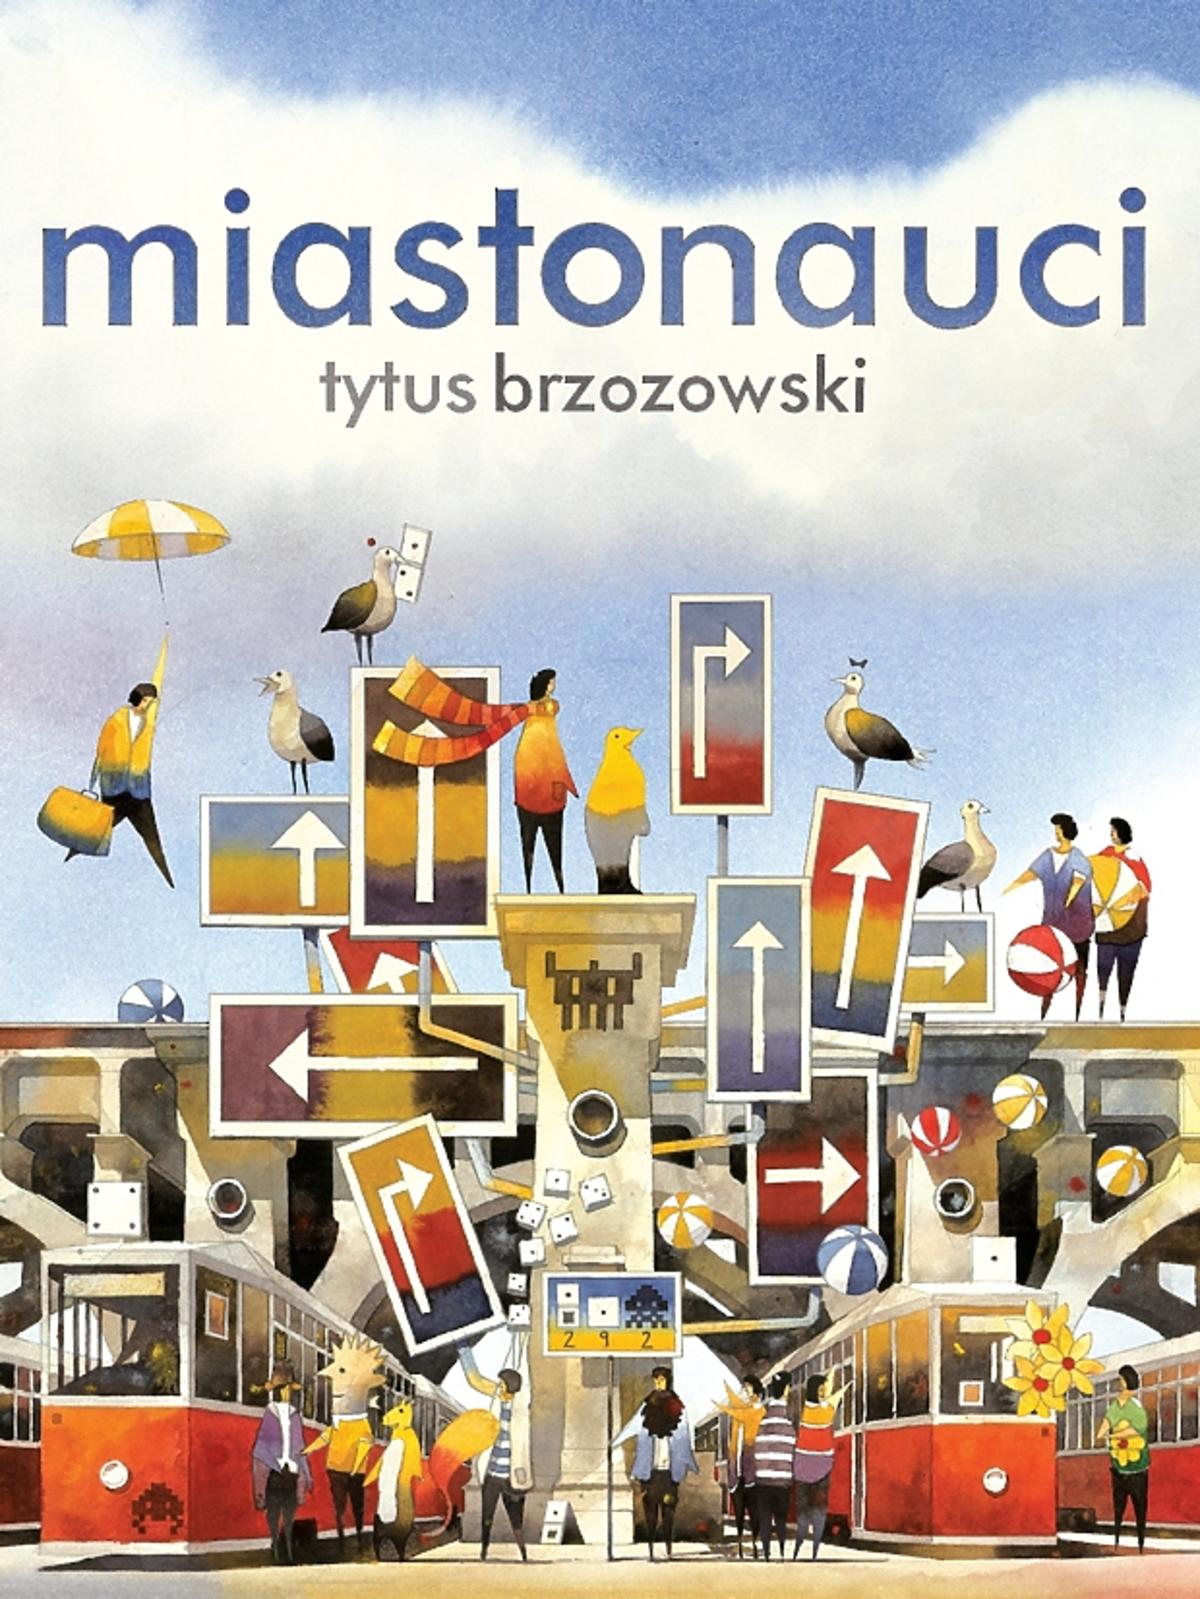 Miastonauci, Tytus Brzozowski, wydawnictwo Babaryba, cena: 32 zł